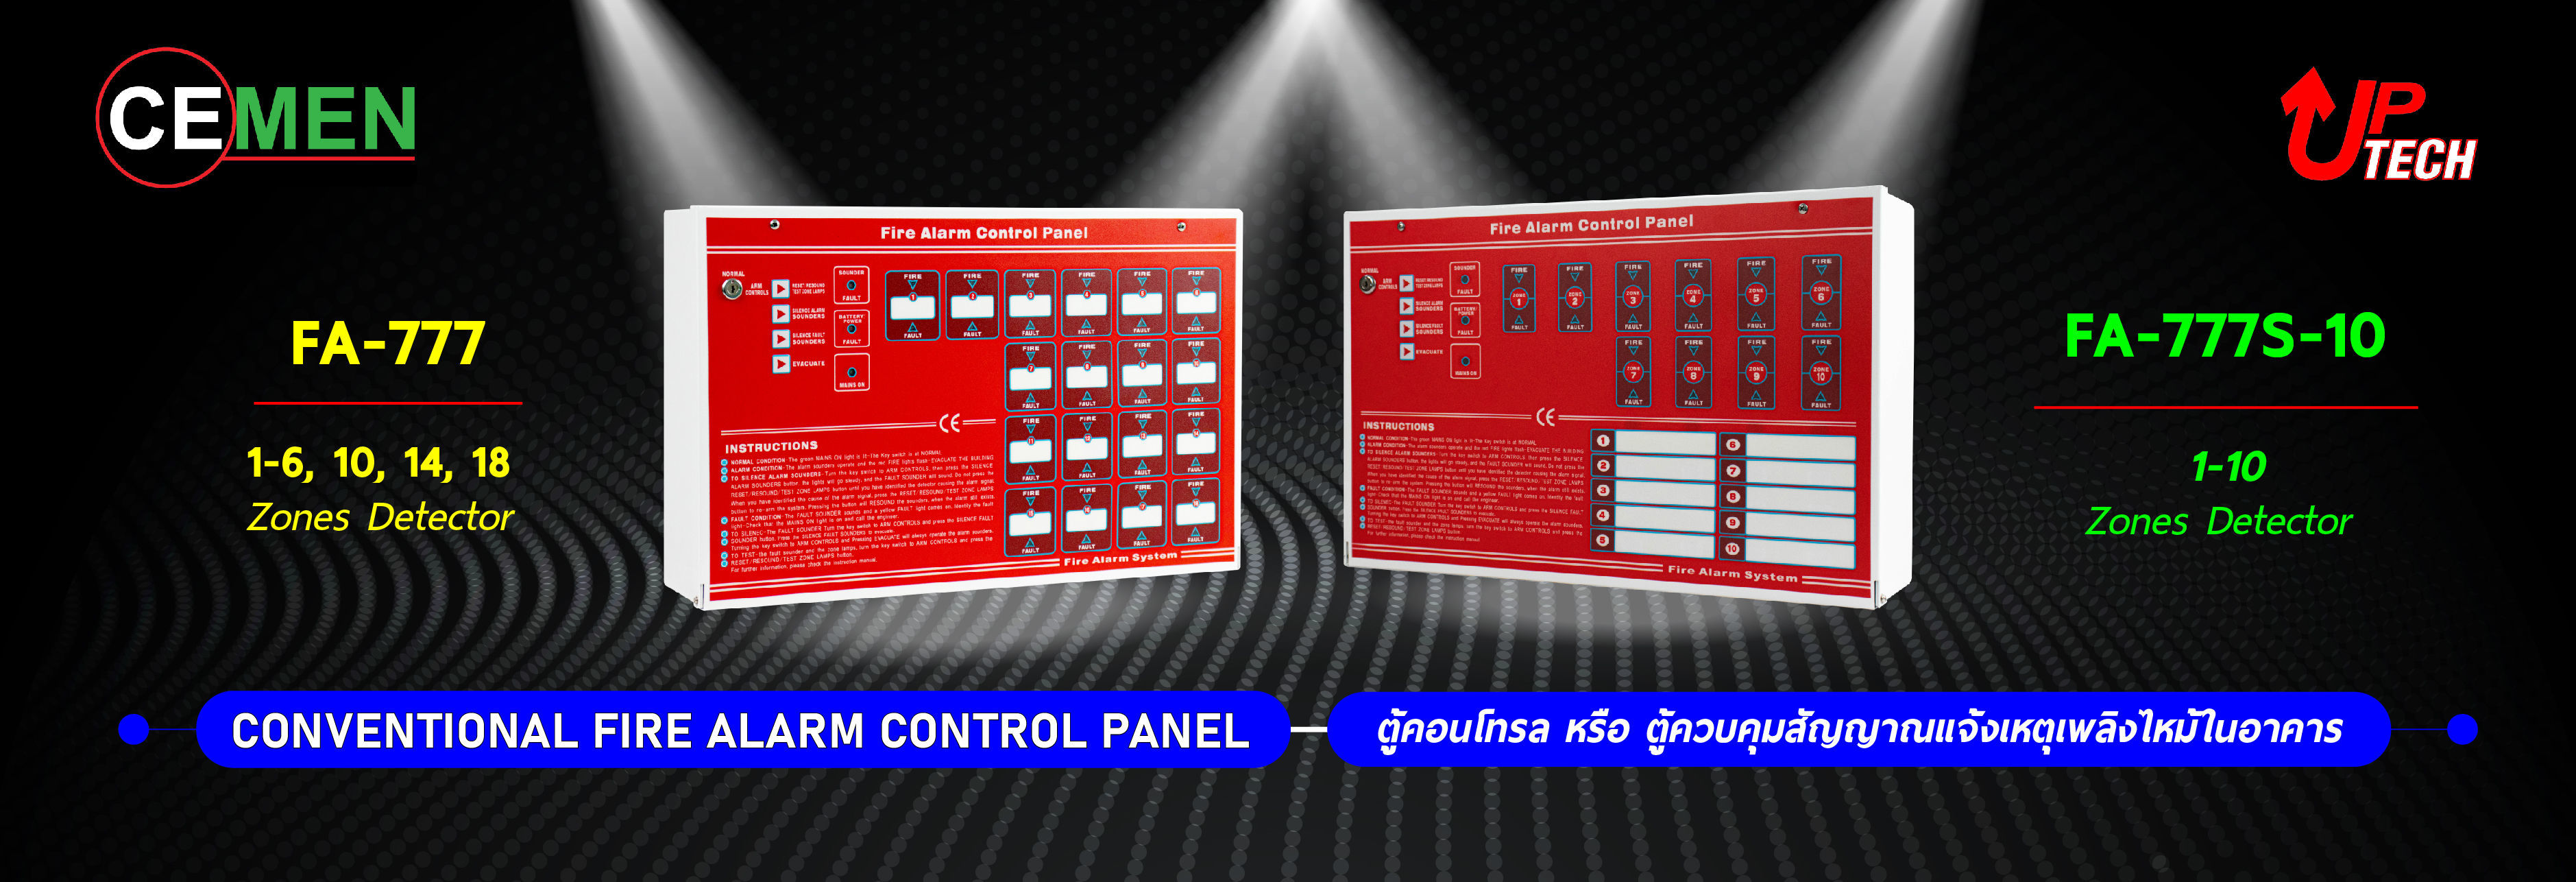 Fire Alarm Control Panel (ตู้คอนโทรล หรือ ตู้ควบคุมสัญญาณแจ้งเหตุเพลิงไหม้ในอาคาร) FA-777 Red and FA